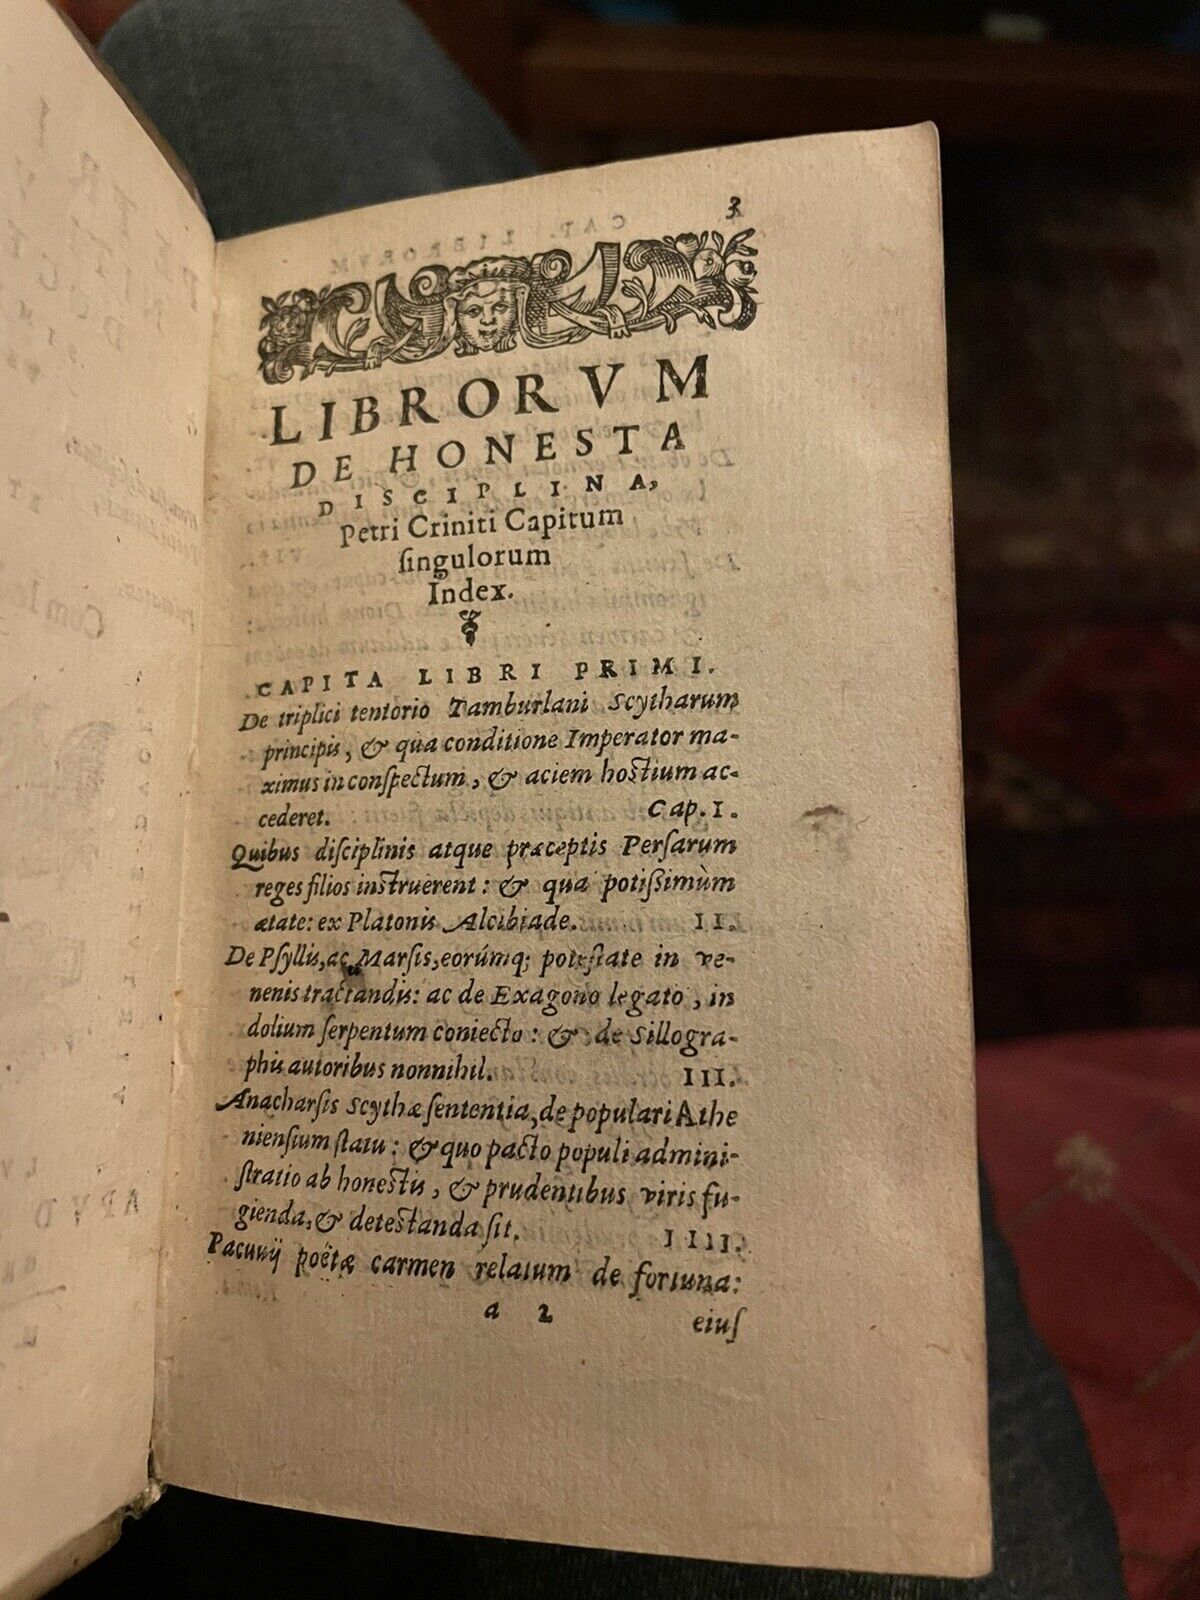 1585 De honesta disciplina : Petri Criniti Viri Doctissimi : Latin Vellum